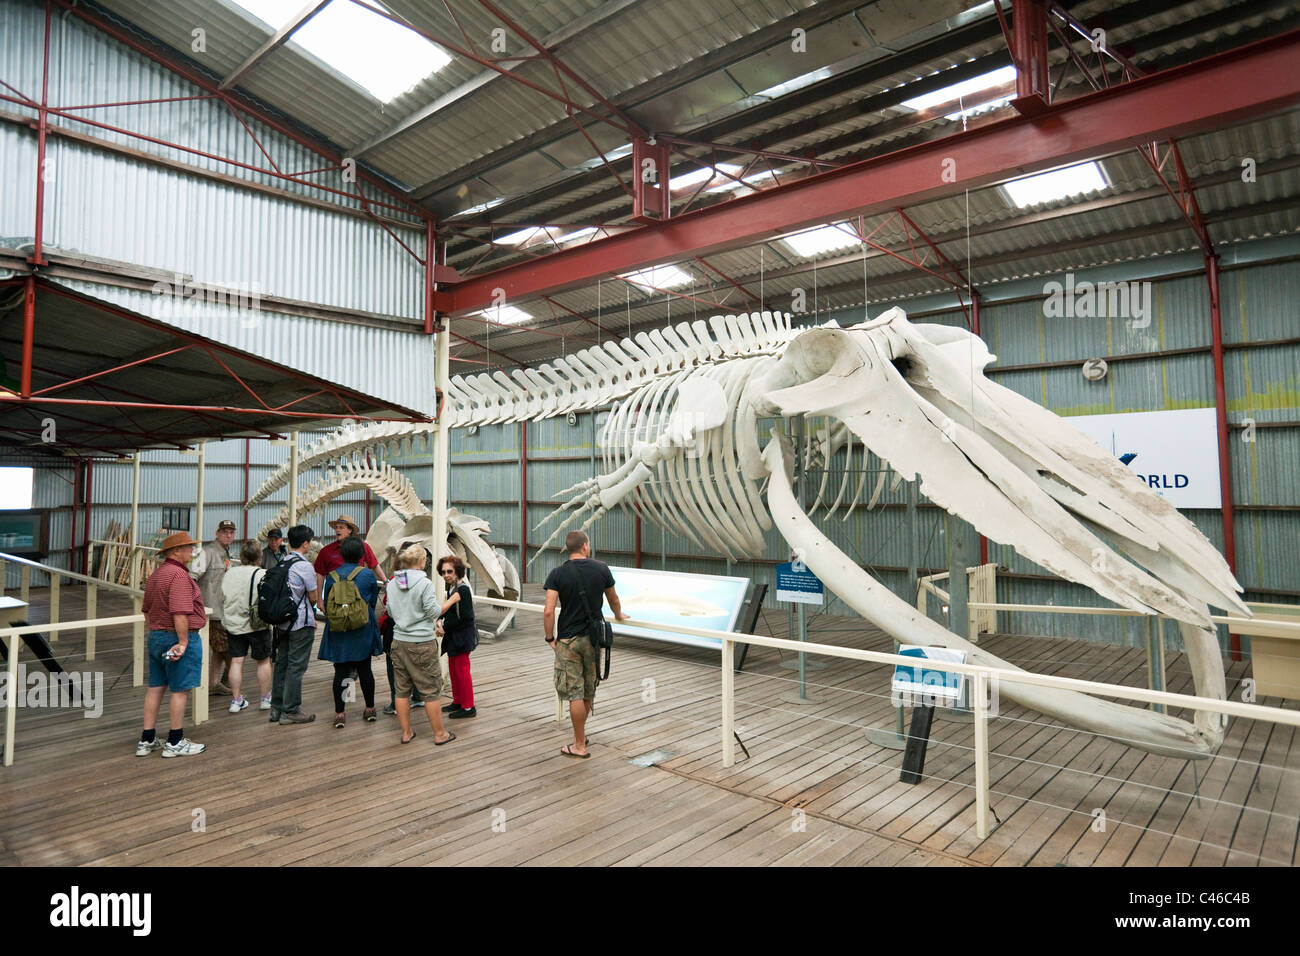 Squelette de rorqual bleu à Whale World museum. La baie Frenchman, Albany, Australie occidentale, Australie Banque D'Images